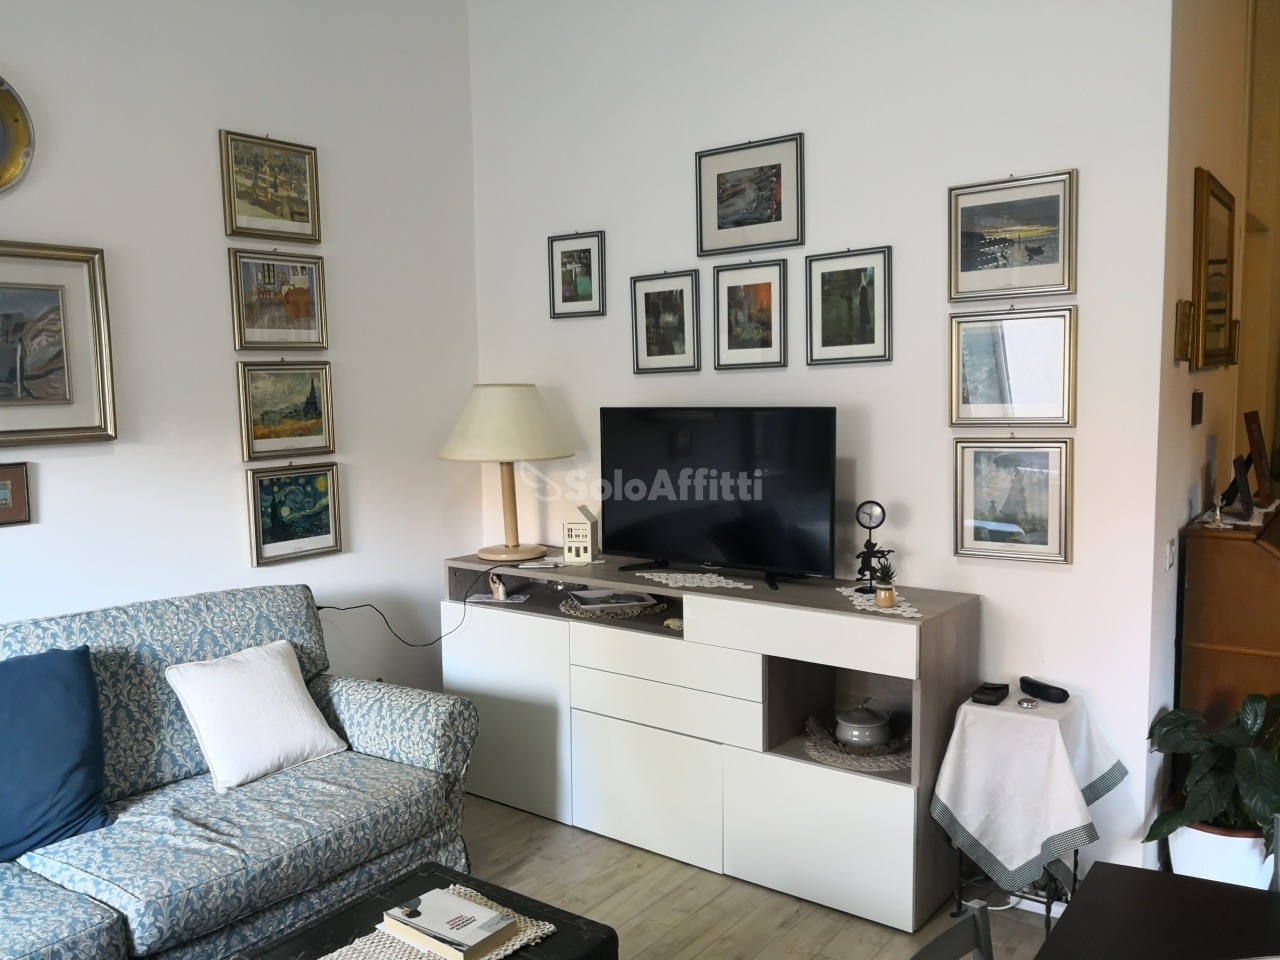 Appartamento in affitto a Saronno, 2 locali, prezzo € 600 | PortaleAgenzieImmobiliari.it